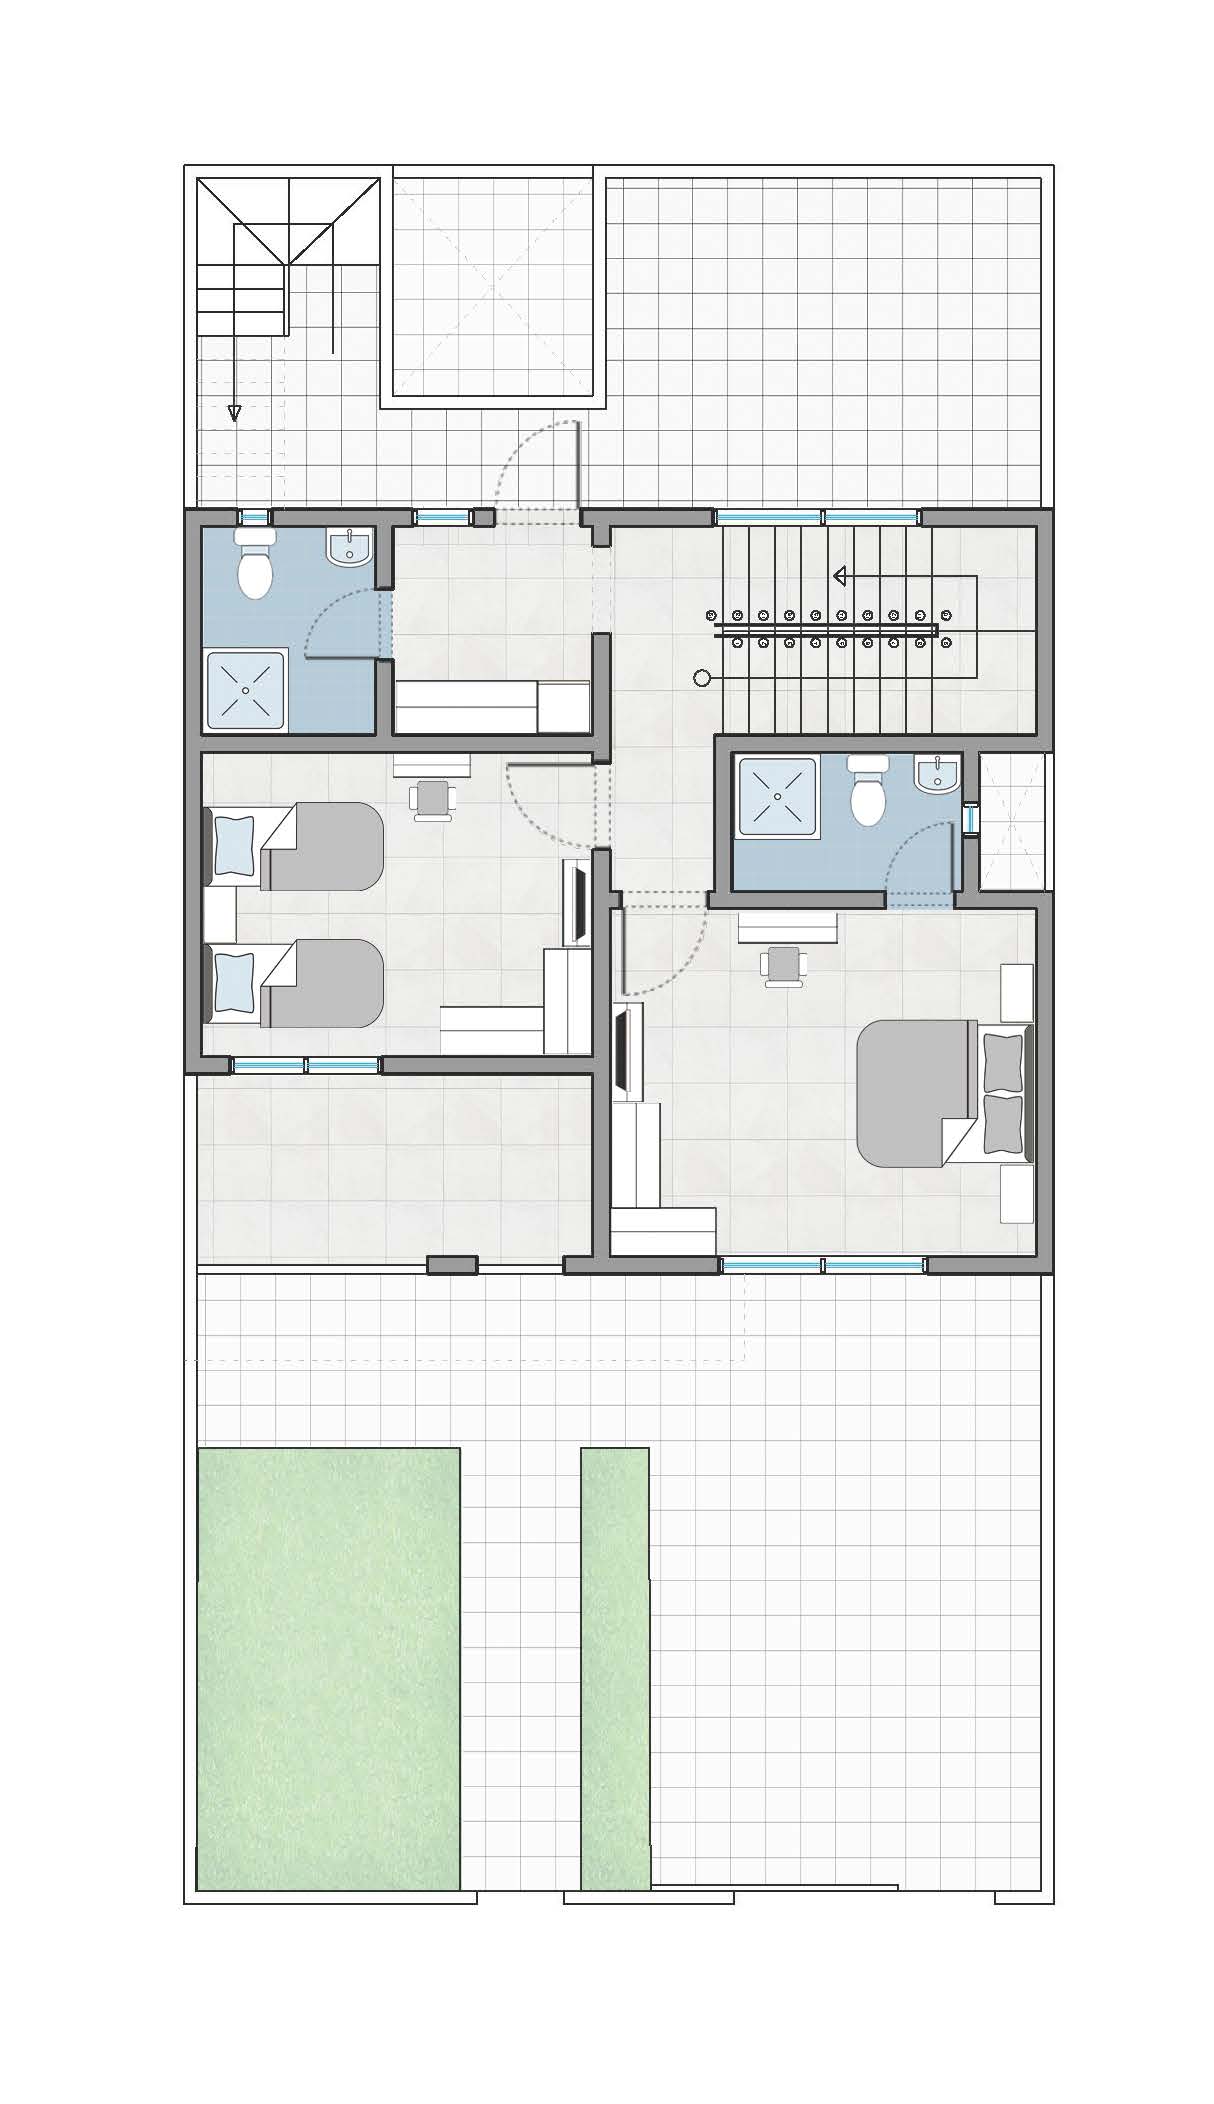 First floor - 200